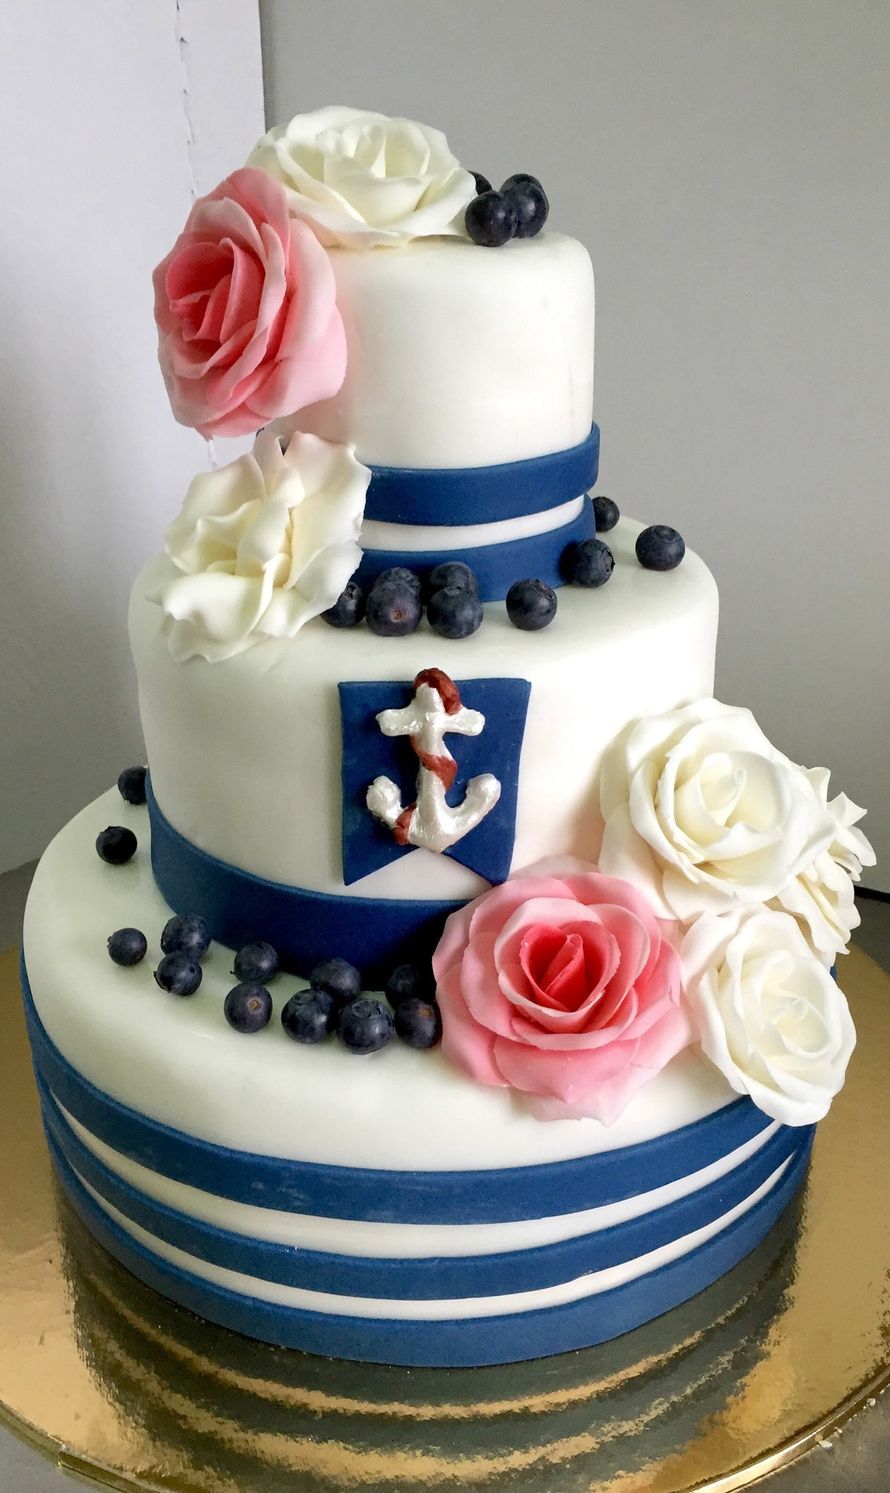 Фото 6395917 в коллекции Свадебные торты - Торты Picasso_cake